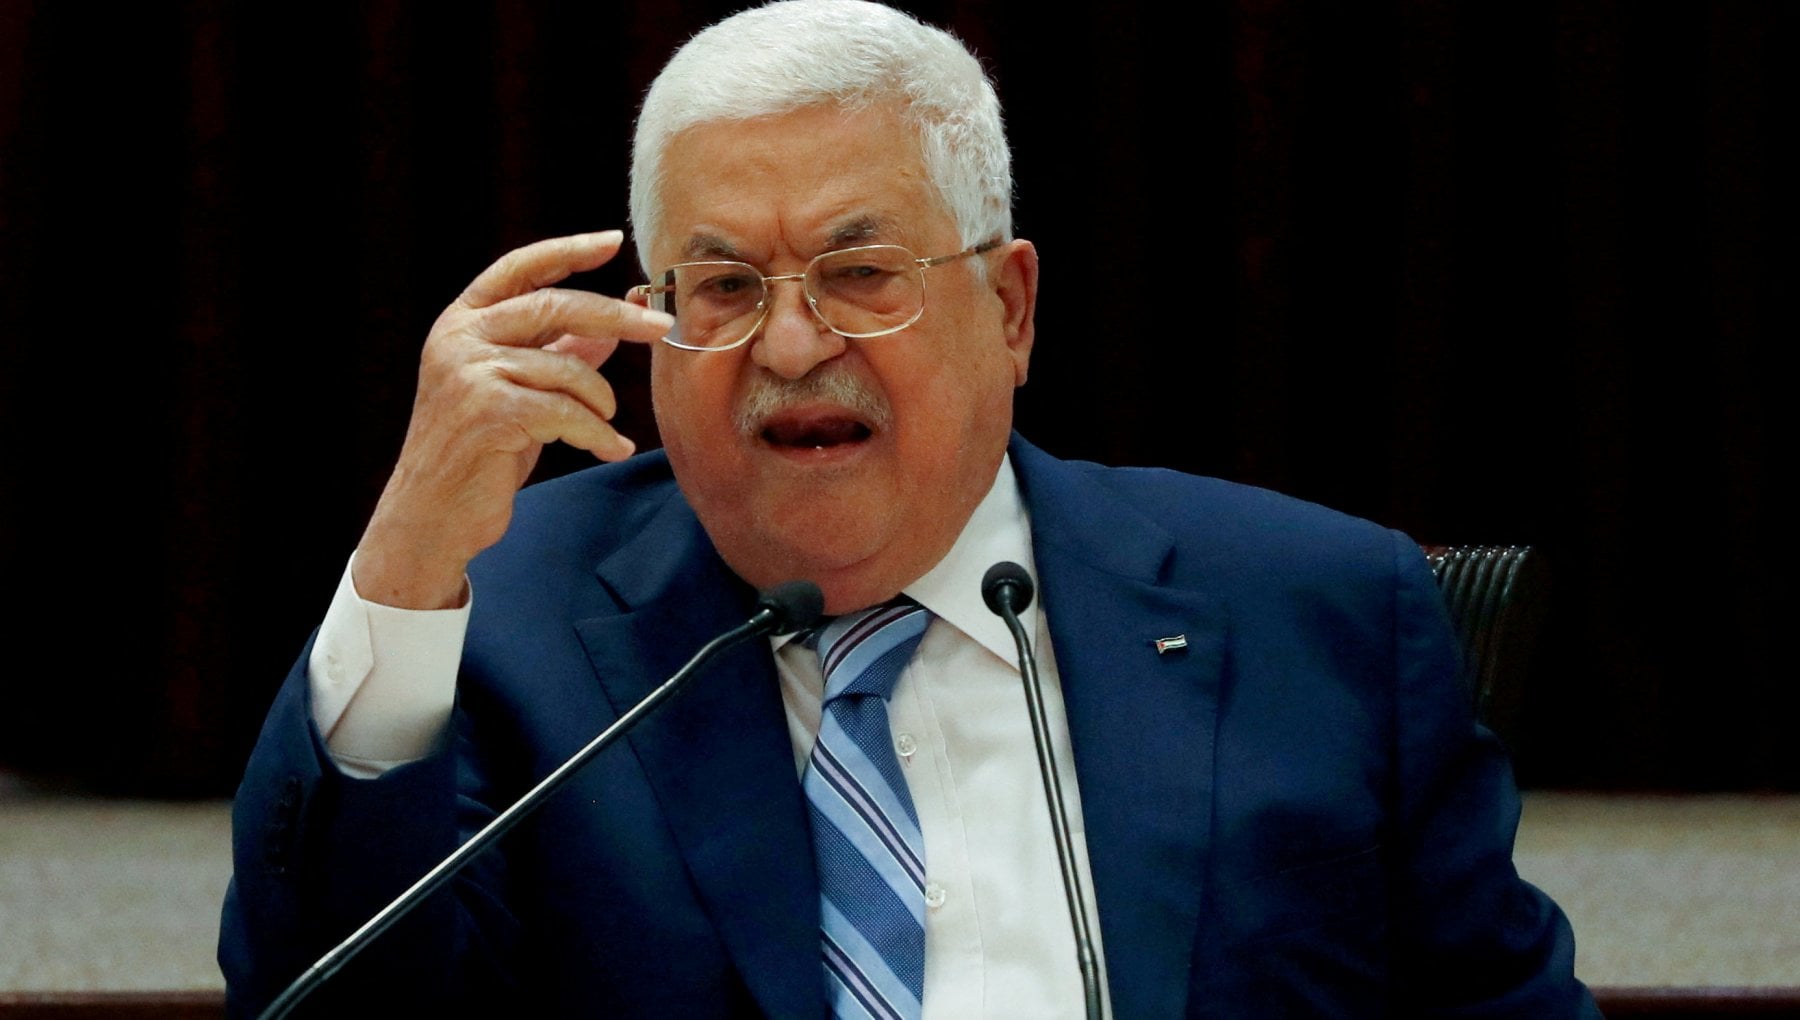 Abu Mazen chiede alla comunità internazionale di riconoscere lo Stato di Palestina